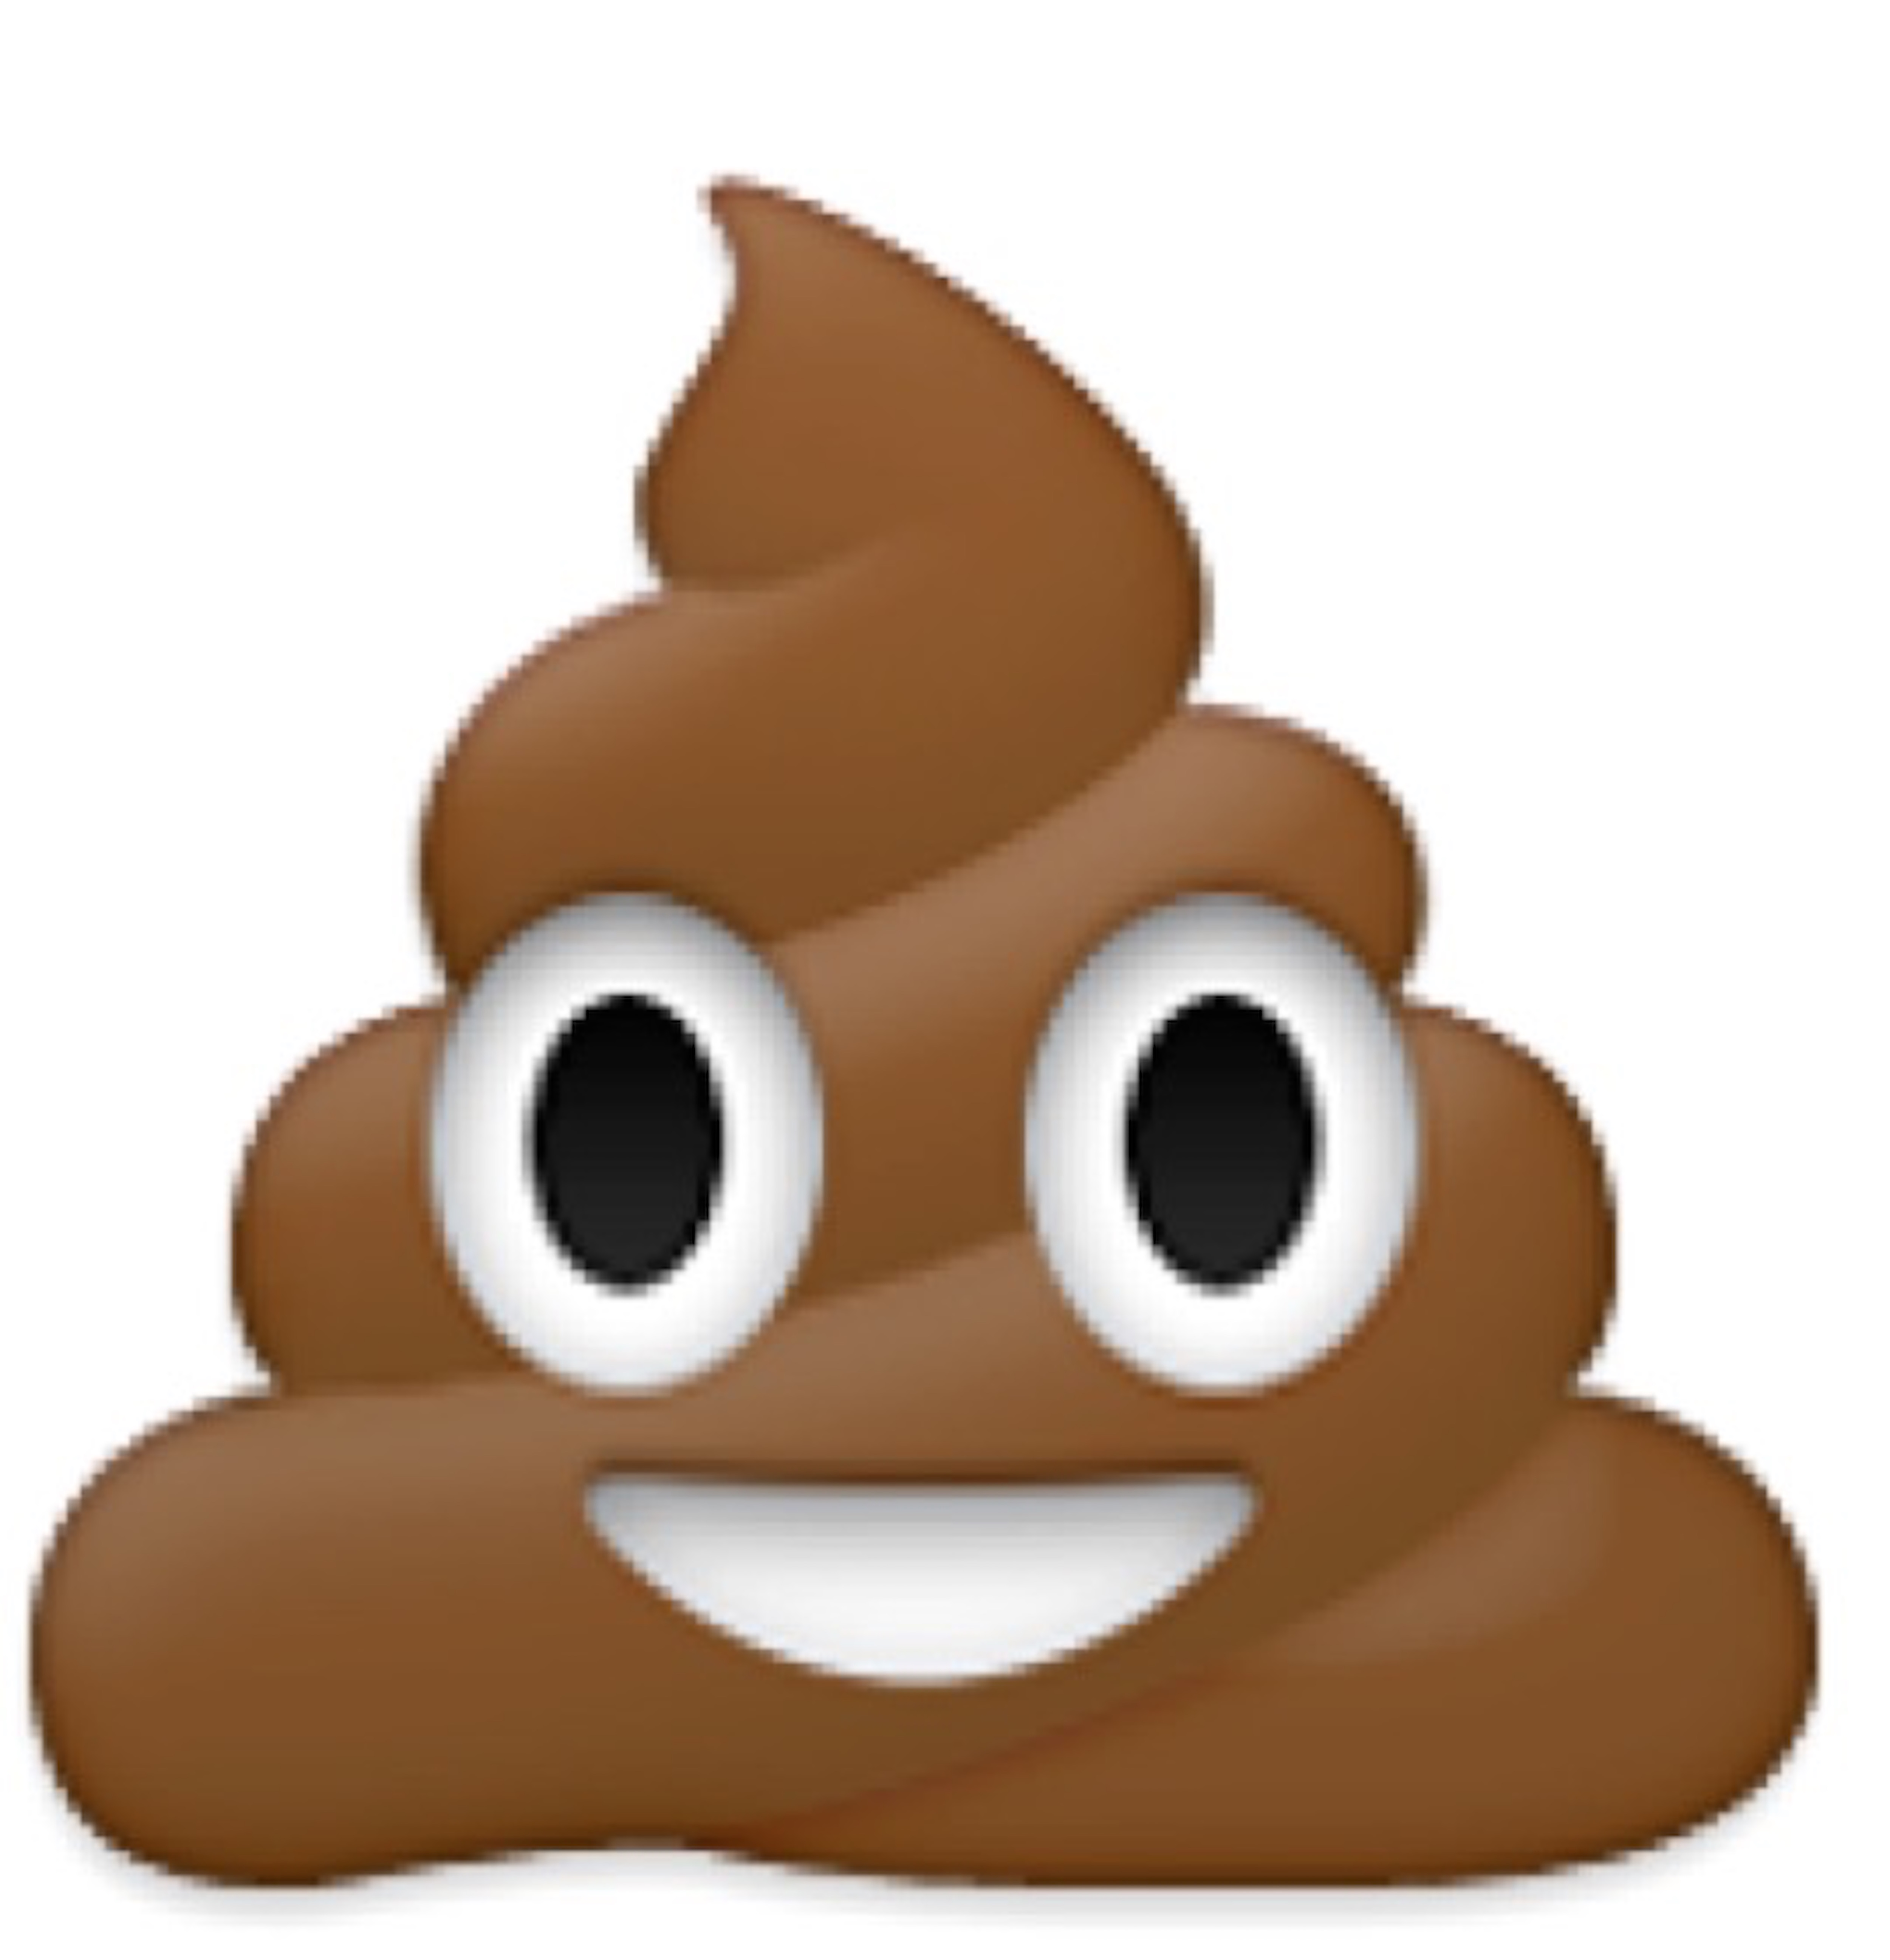 The Smiling Pile of Poop Emoji